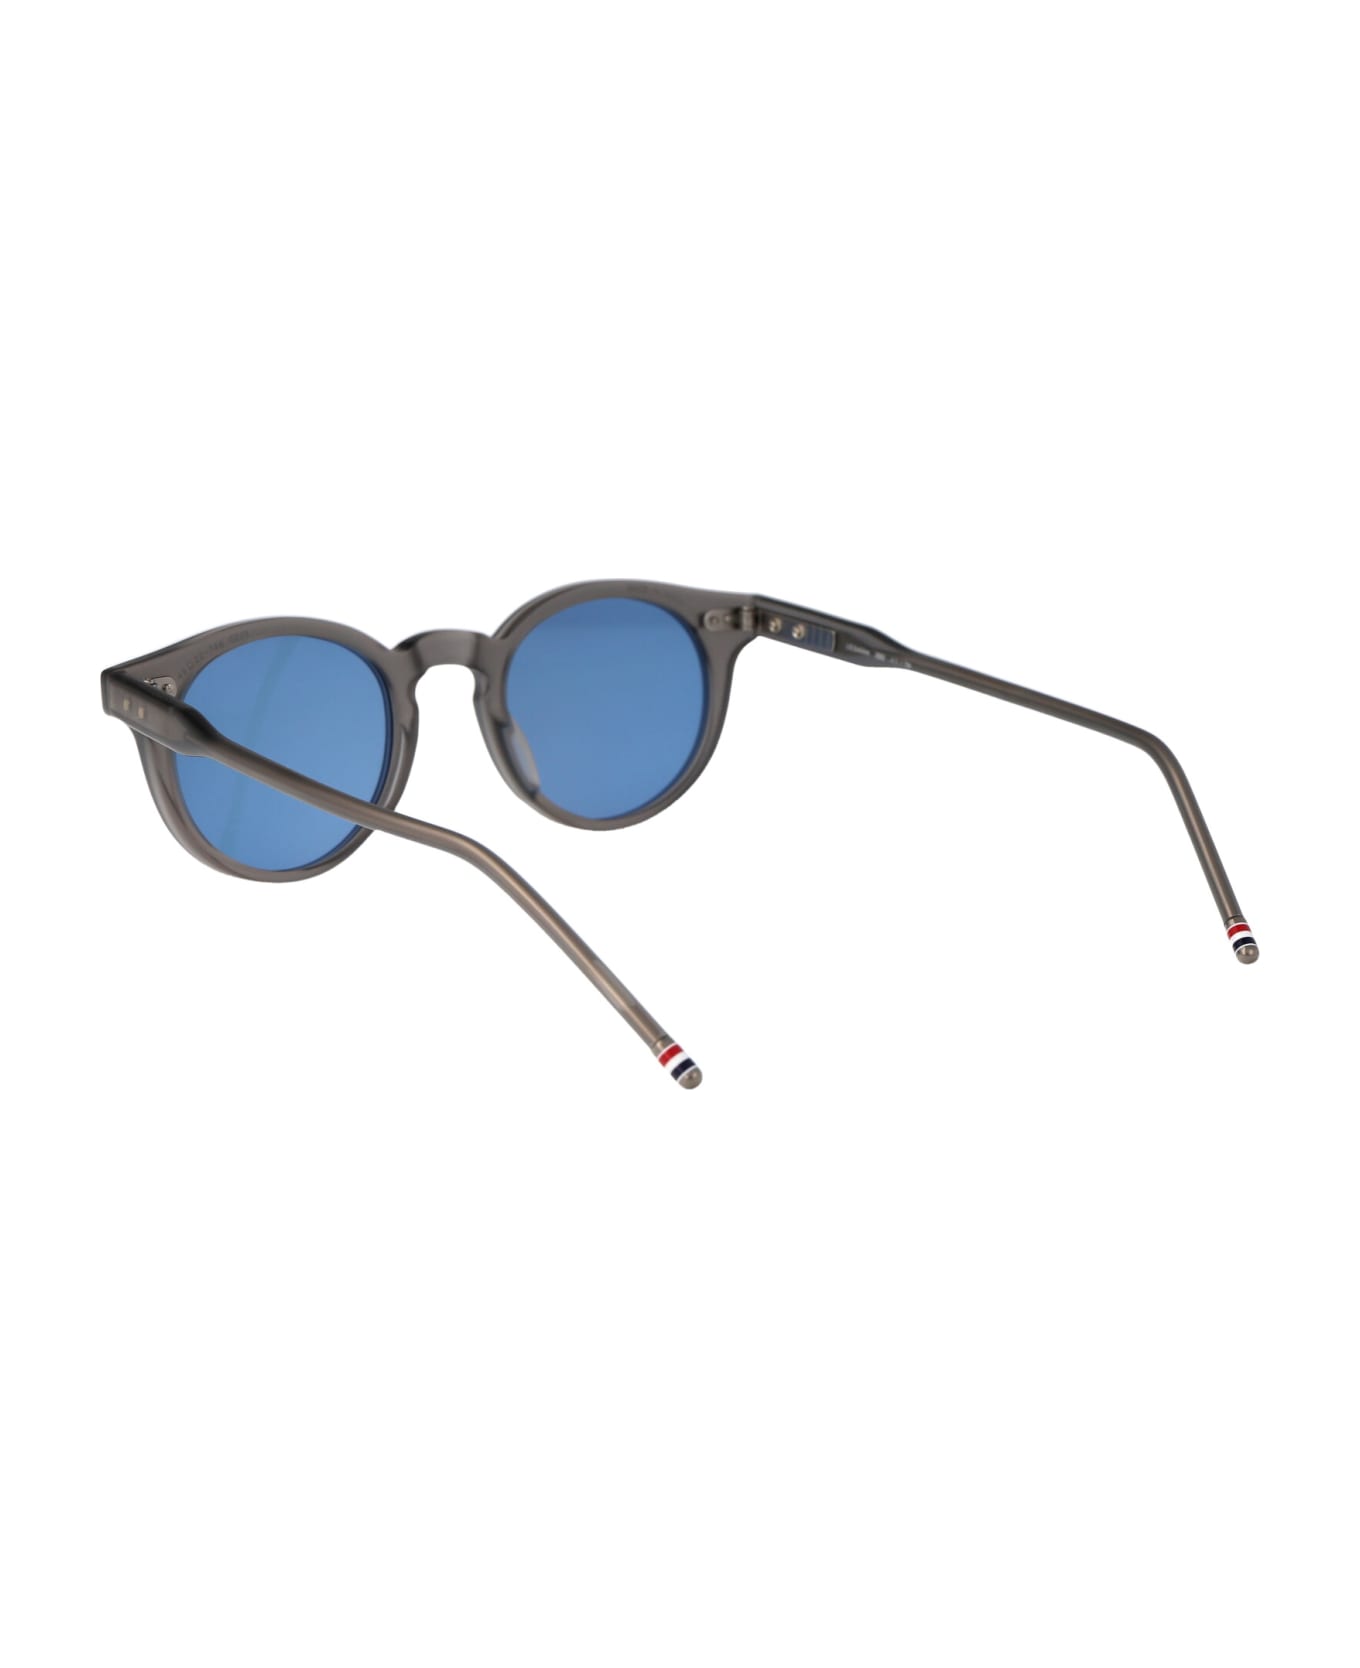 Thom Browne Ues404a-g0002-060-45 Sunglasses - light grey サングラス